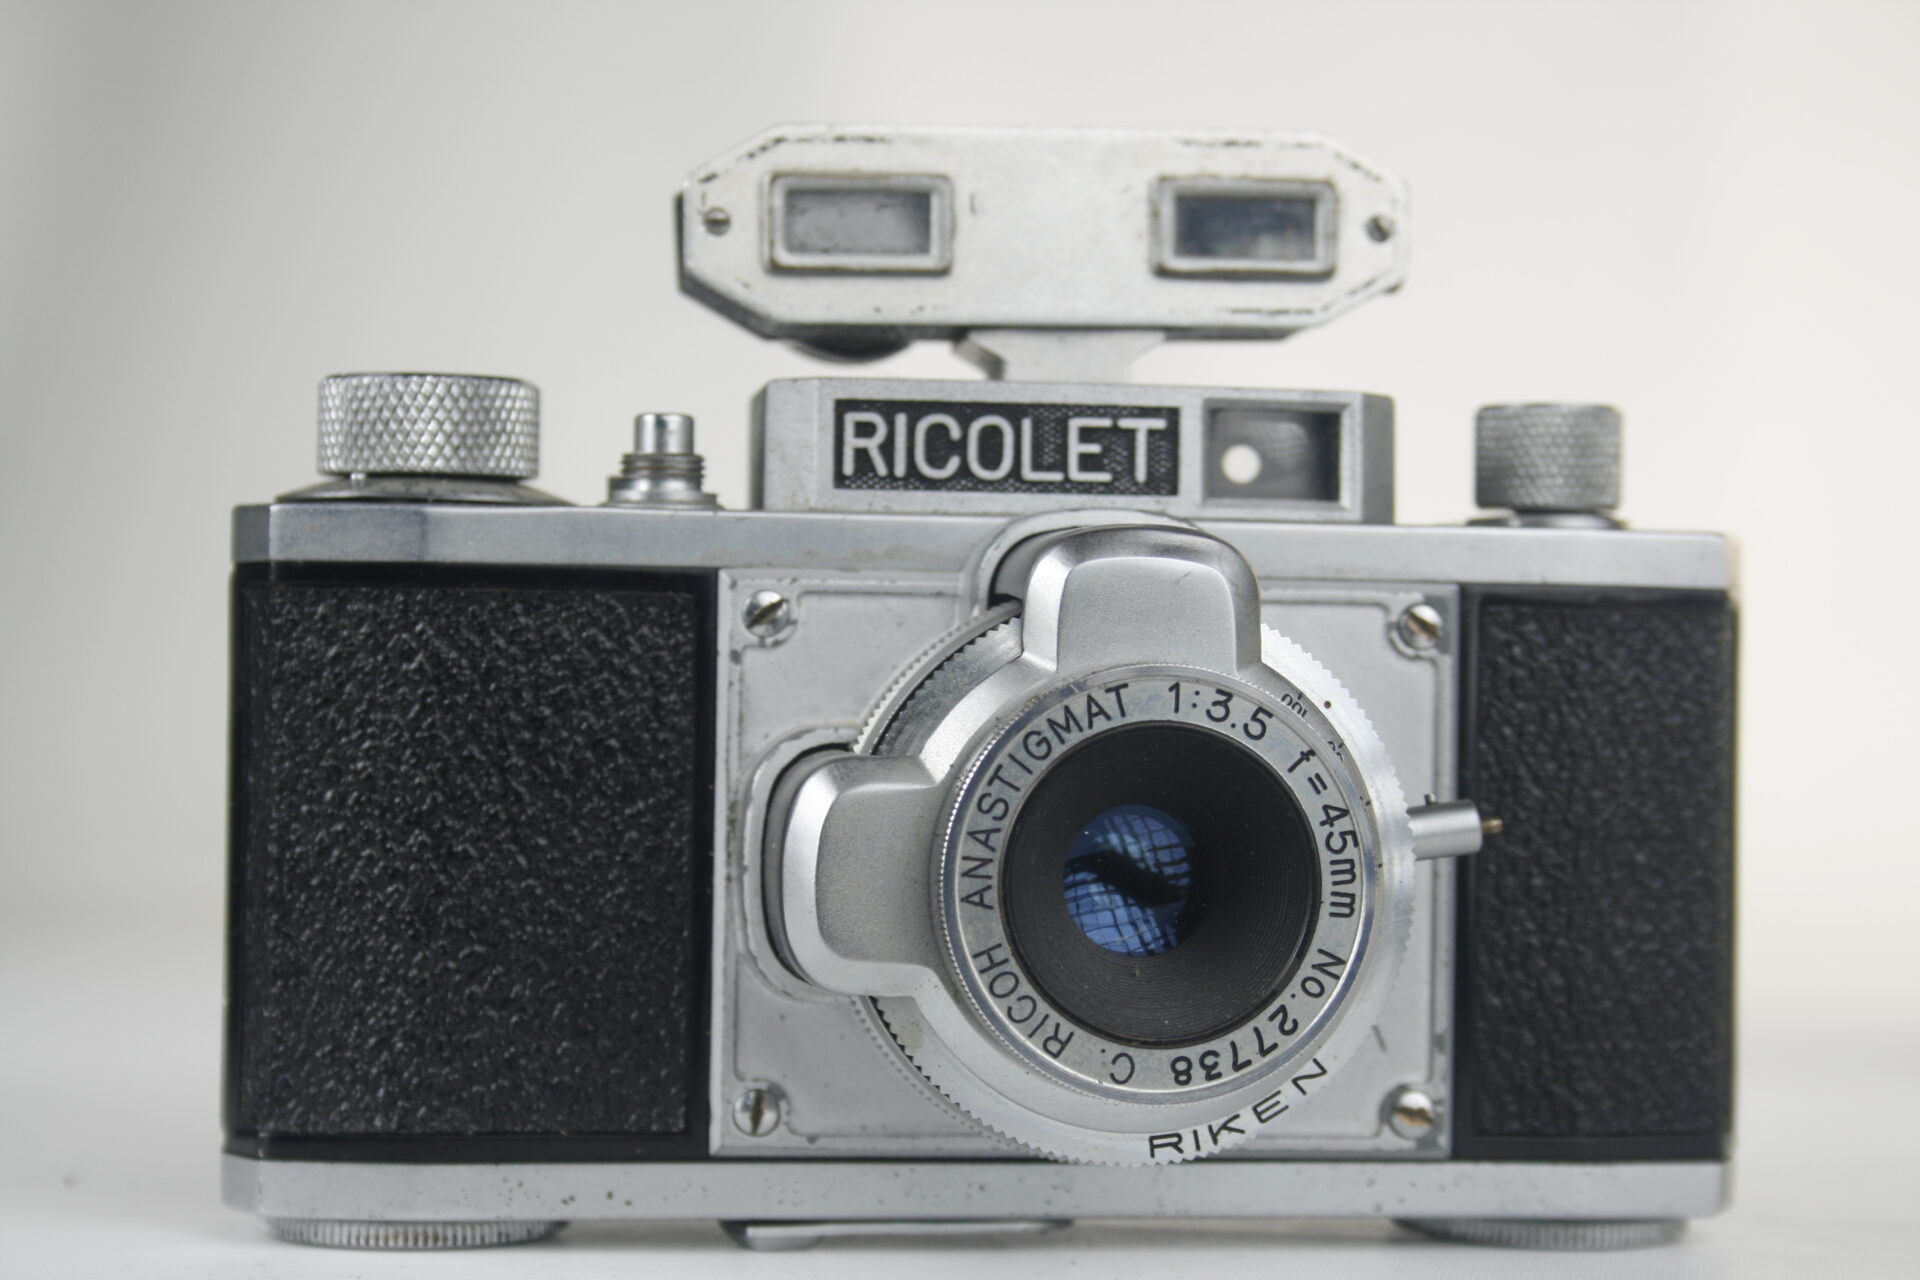 Ricoh Ricolet 35mm viewfinder camera. Ca. 1953. Japan.